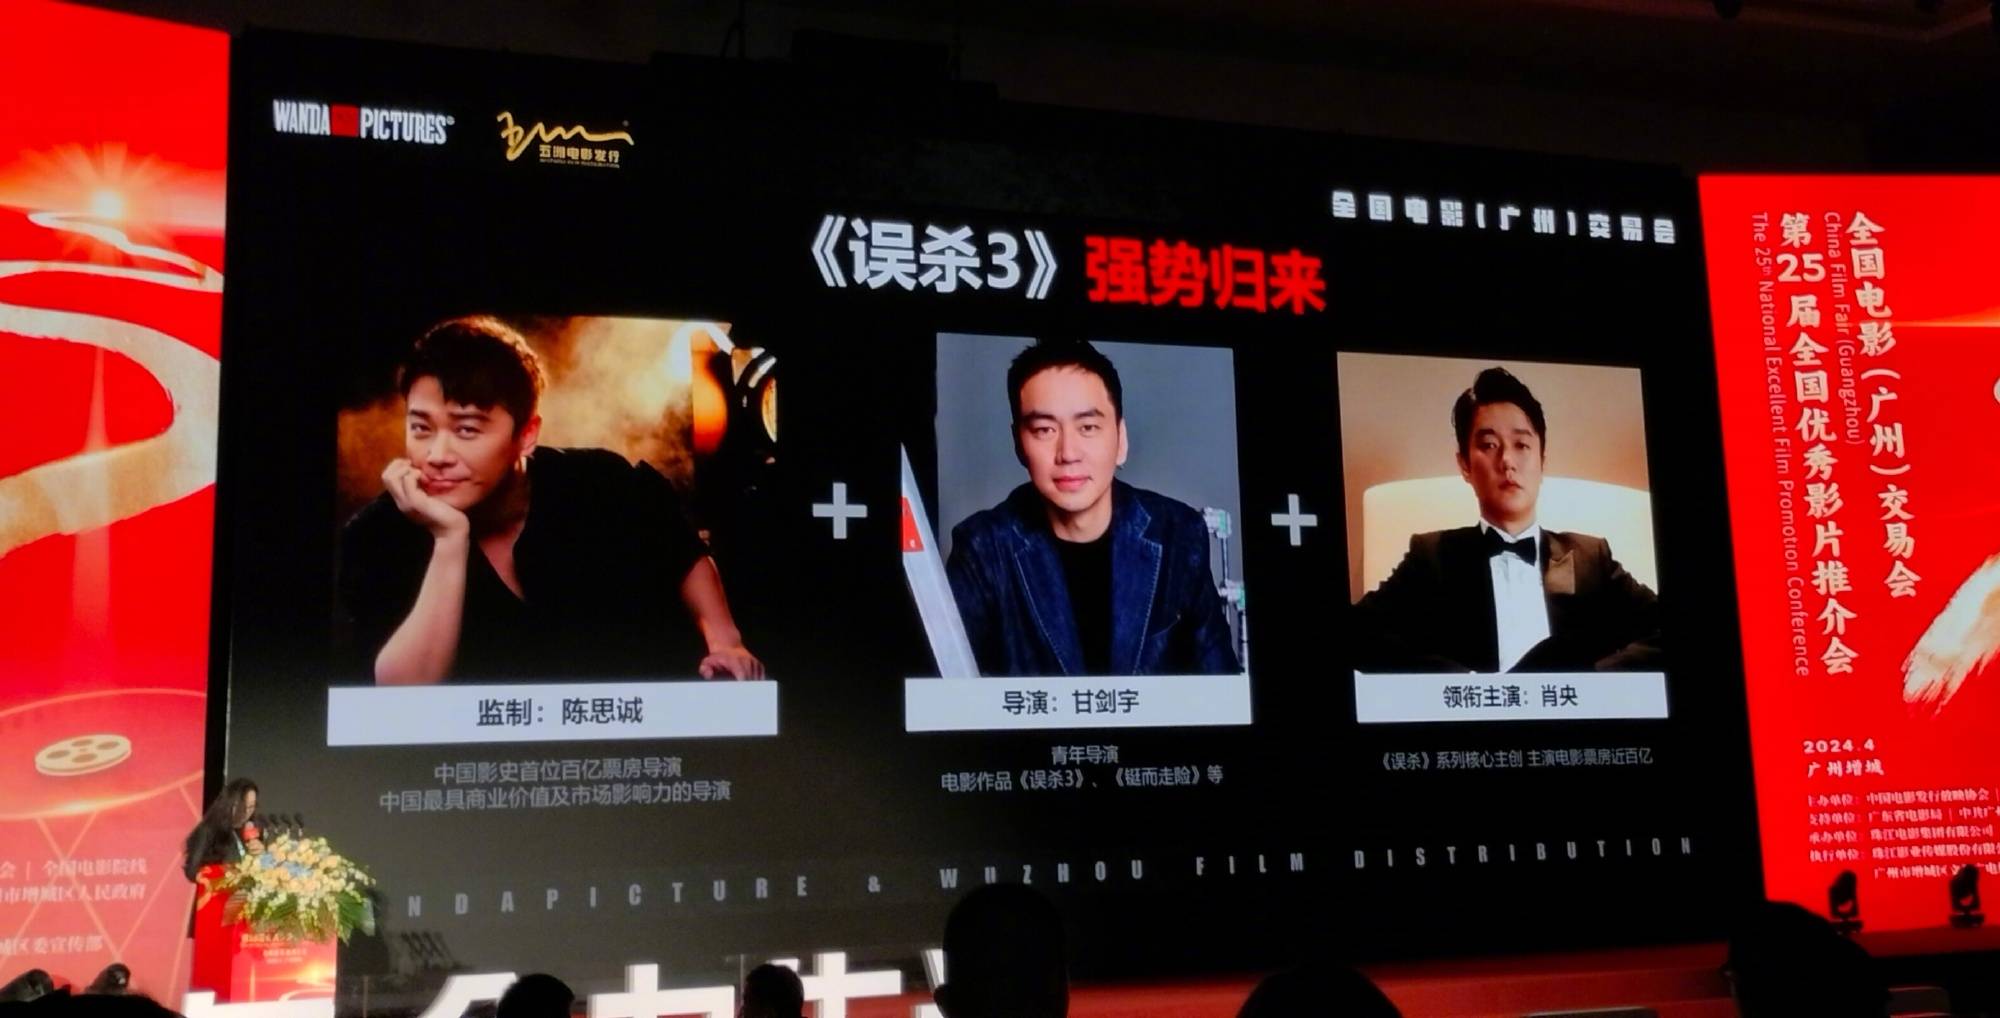 电影《误杀3》正式官宣阵容 陈思诚监制肖央领衔主演，预计年底上映